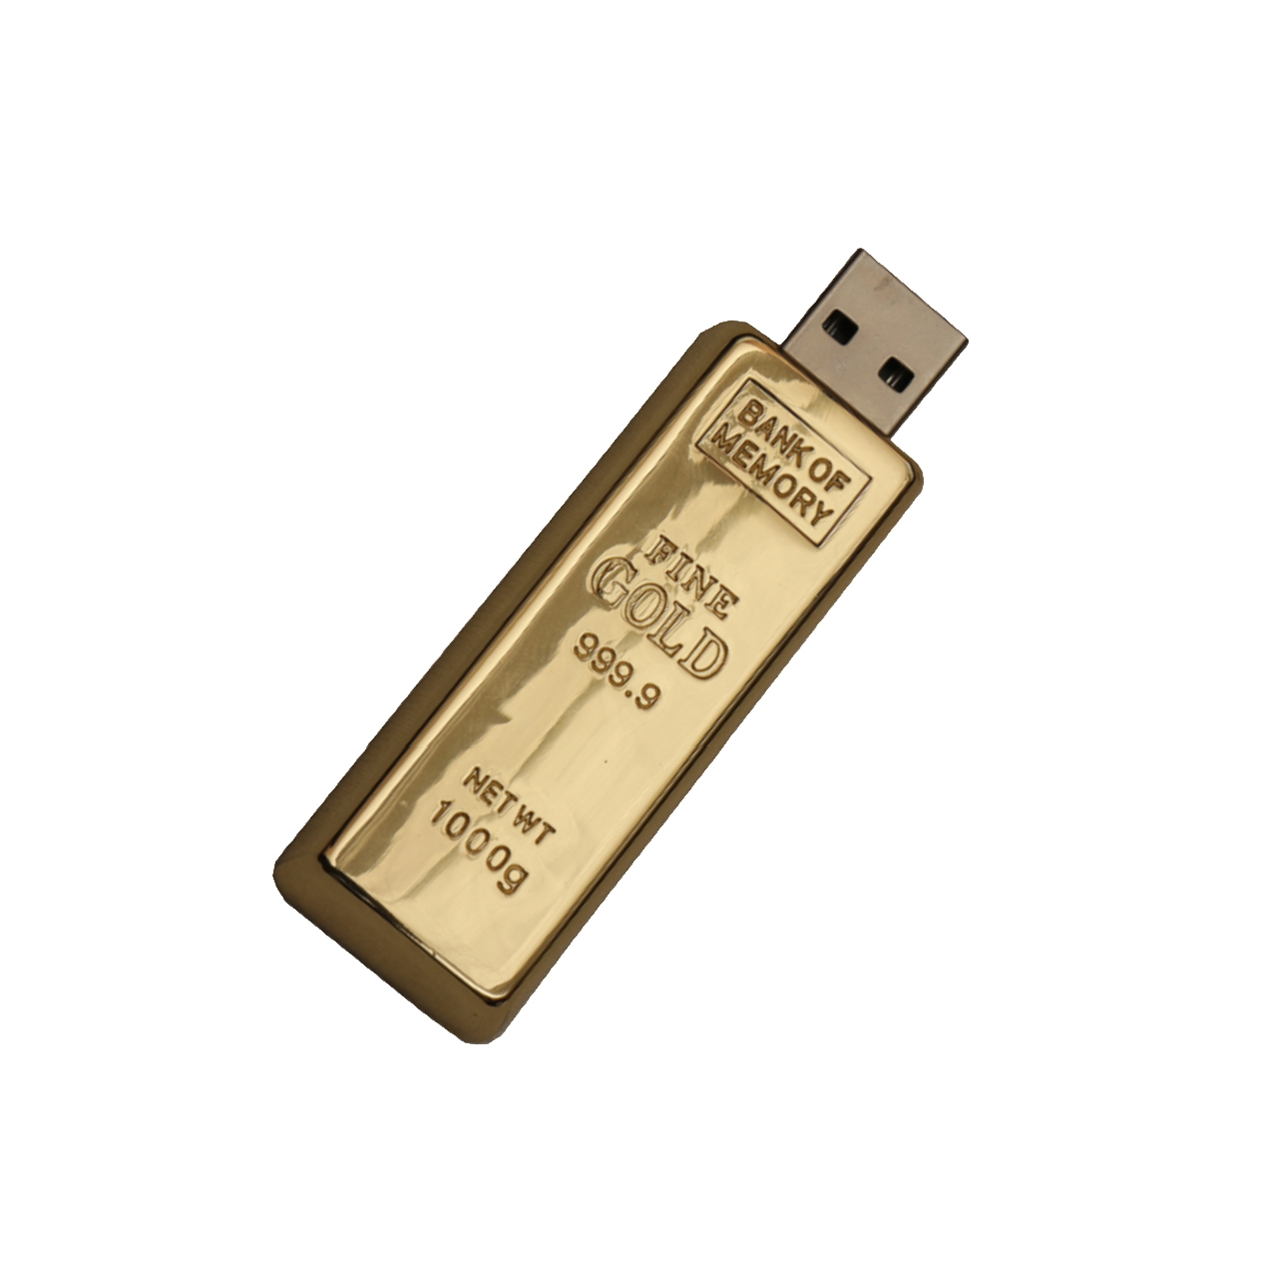 فلش مموری فلزی دایا دیتا طرح Gold Ingot مدل ME1001-USB3 ظرفیت 128 گیگابایت